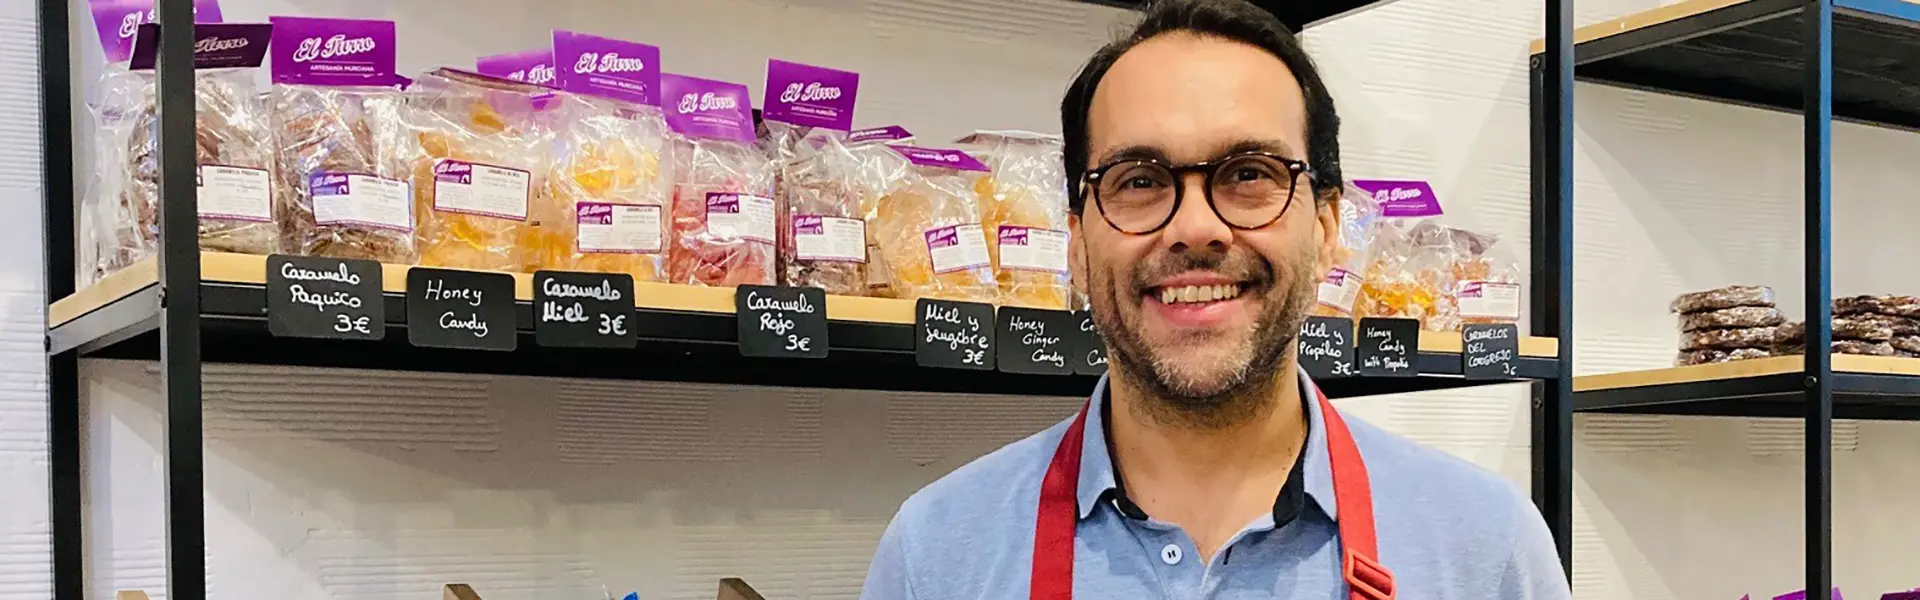 La firma artesana El Turro abre en el corazon de Murcia un nuevo local dedicado a la venta de productos tipicos ultimas noticias